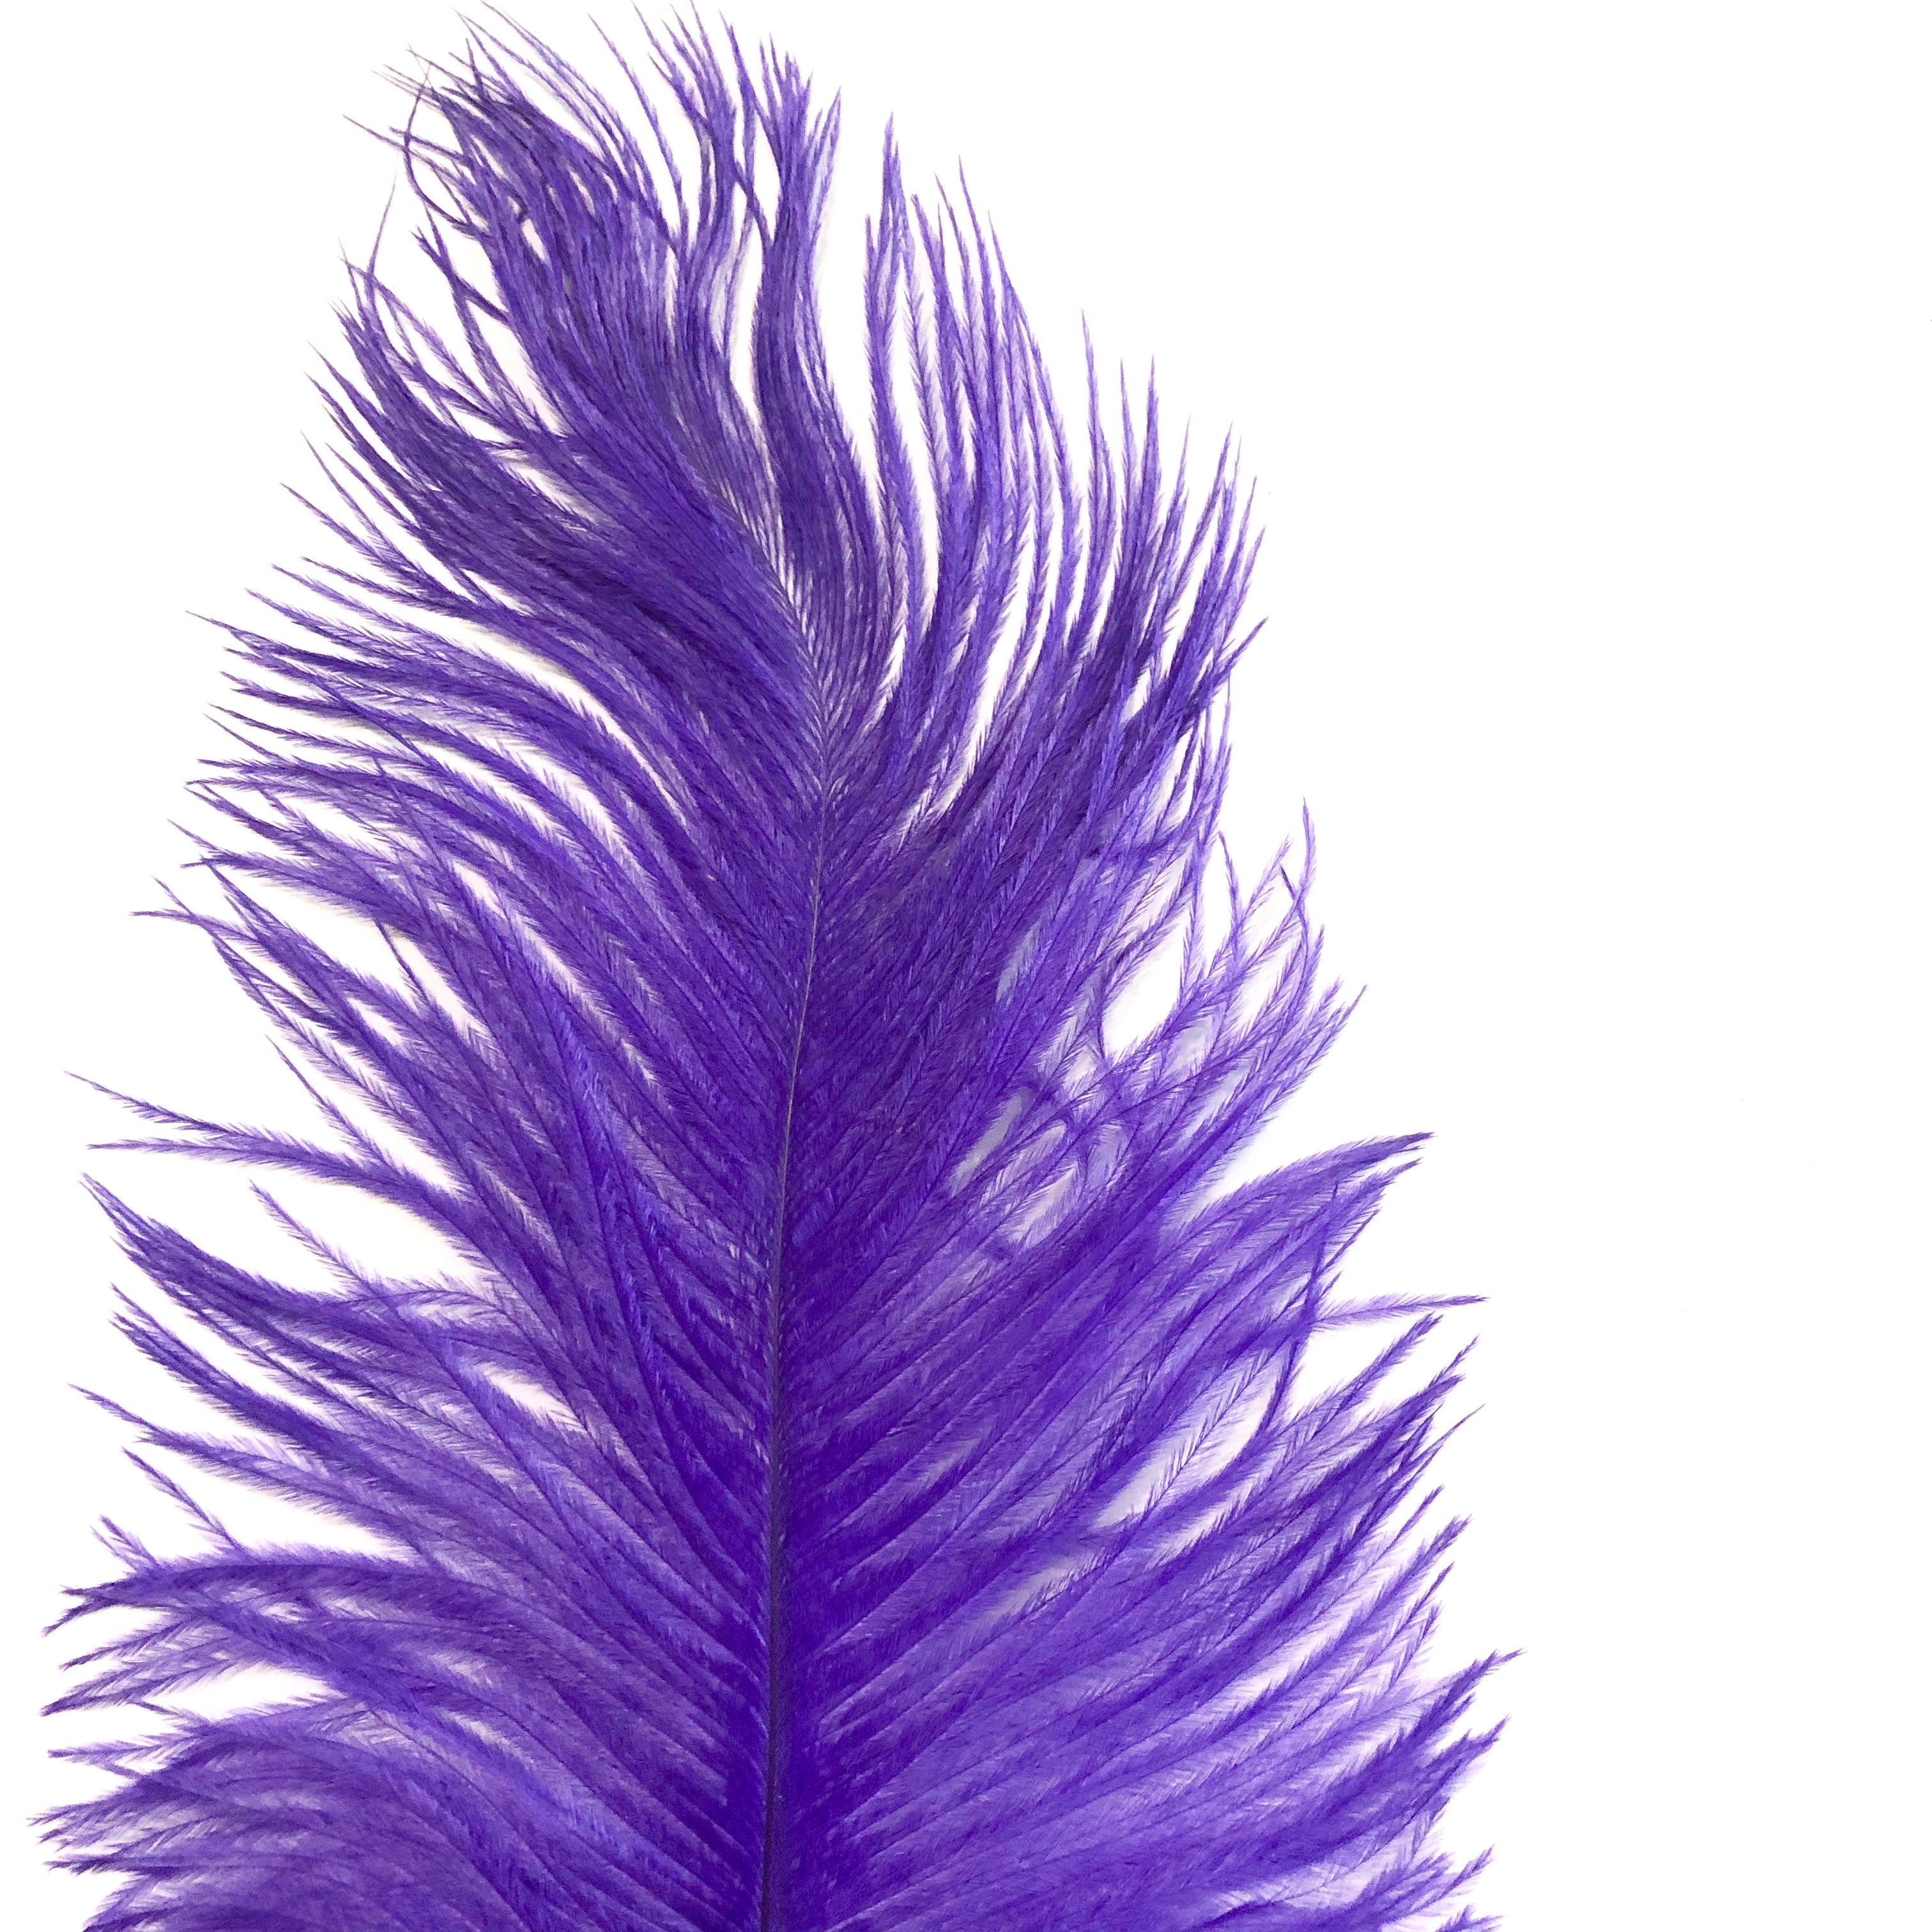 Ostrich Feather Drab 37-42cm x 5 pcs - Purple ((SECONDS))